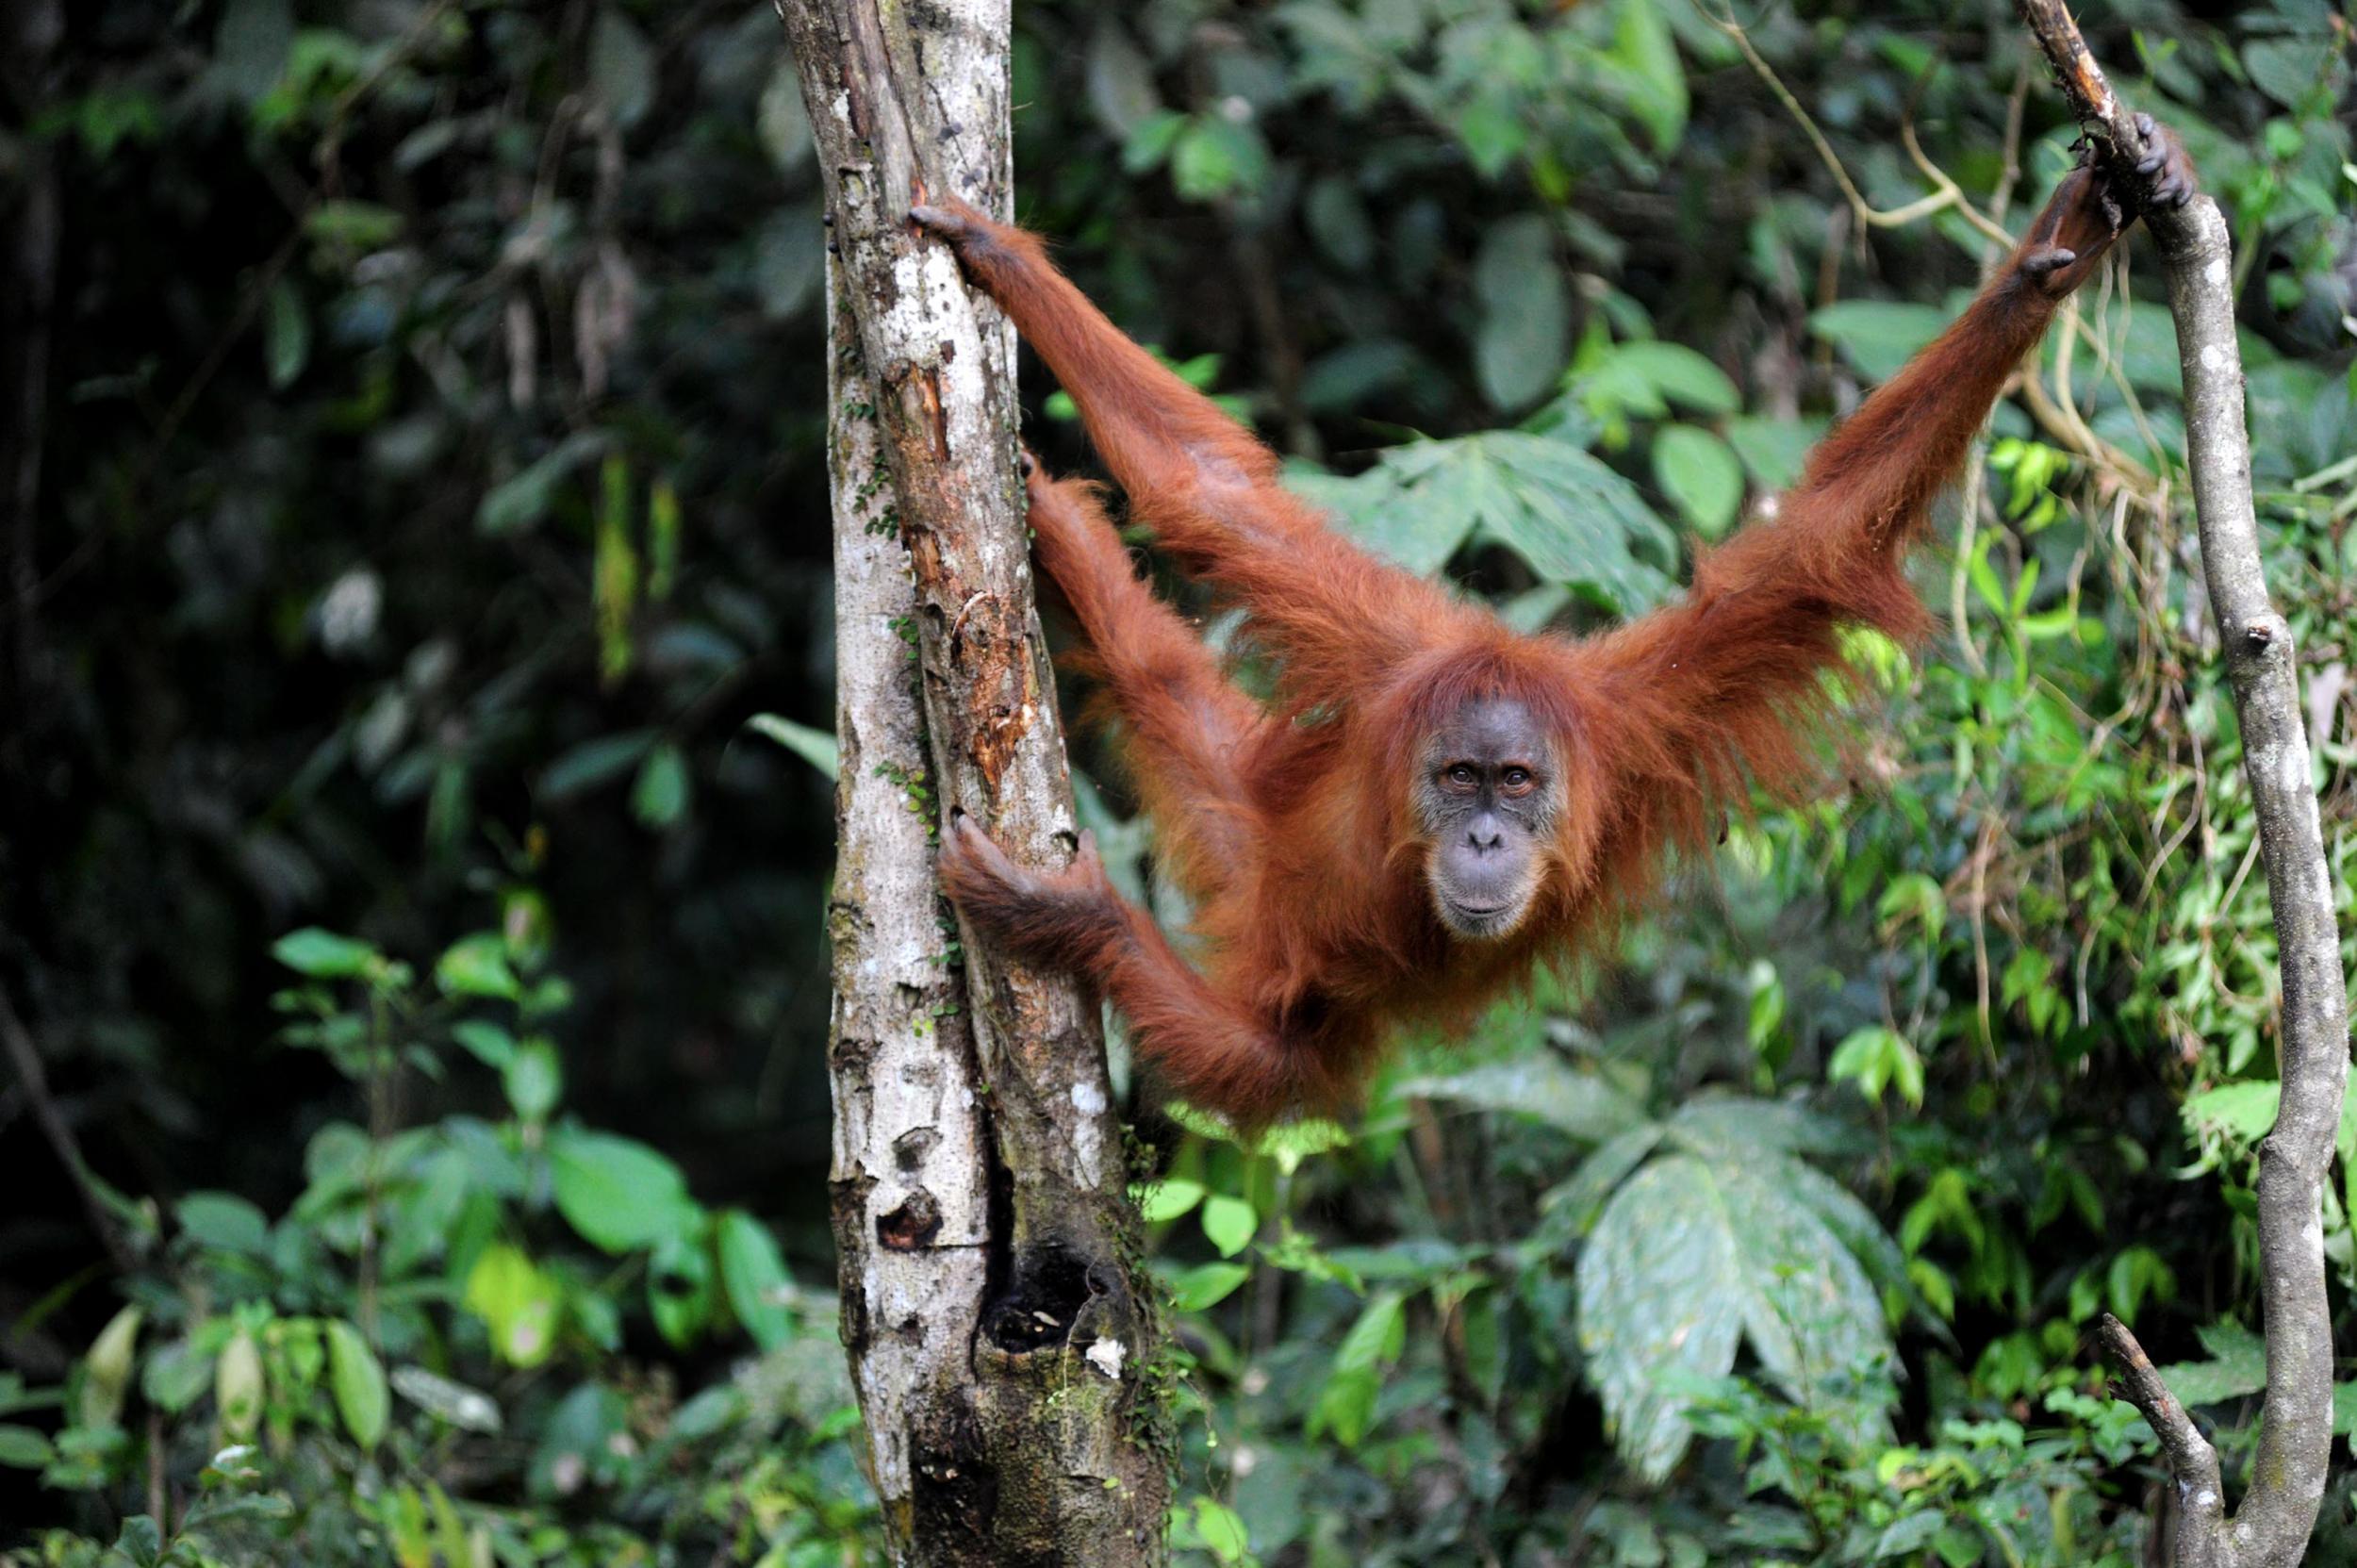 The critically endangered Sumatran orangutan